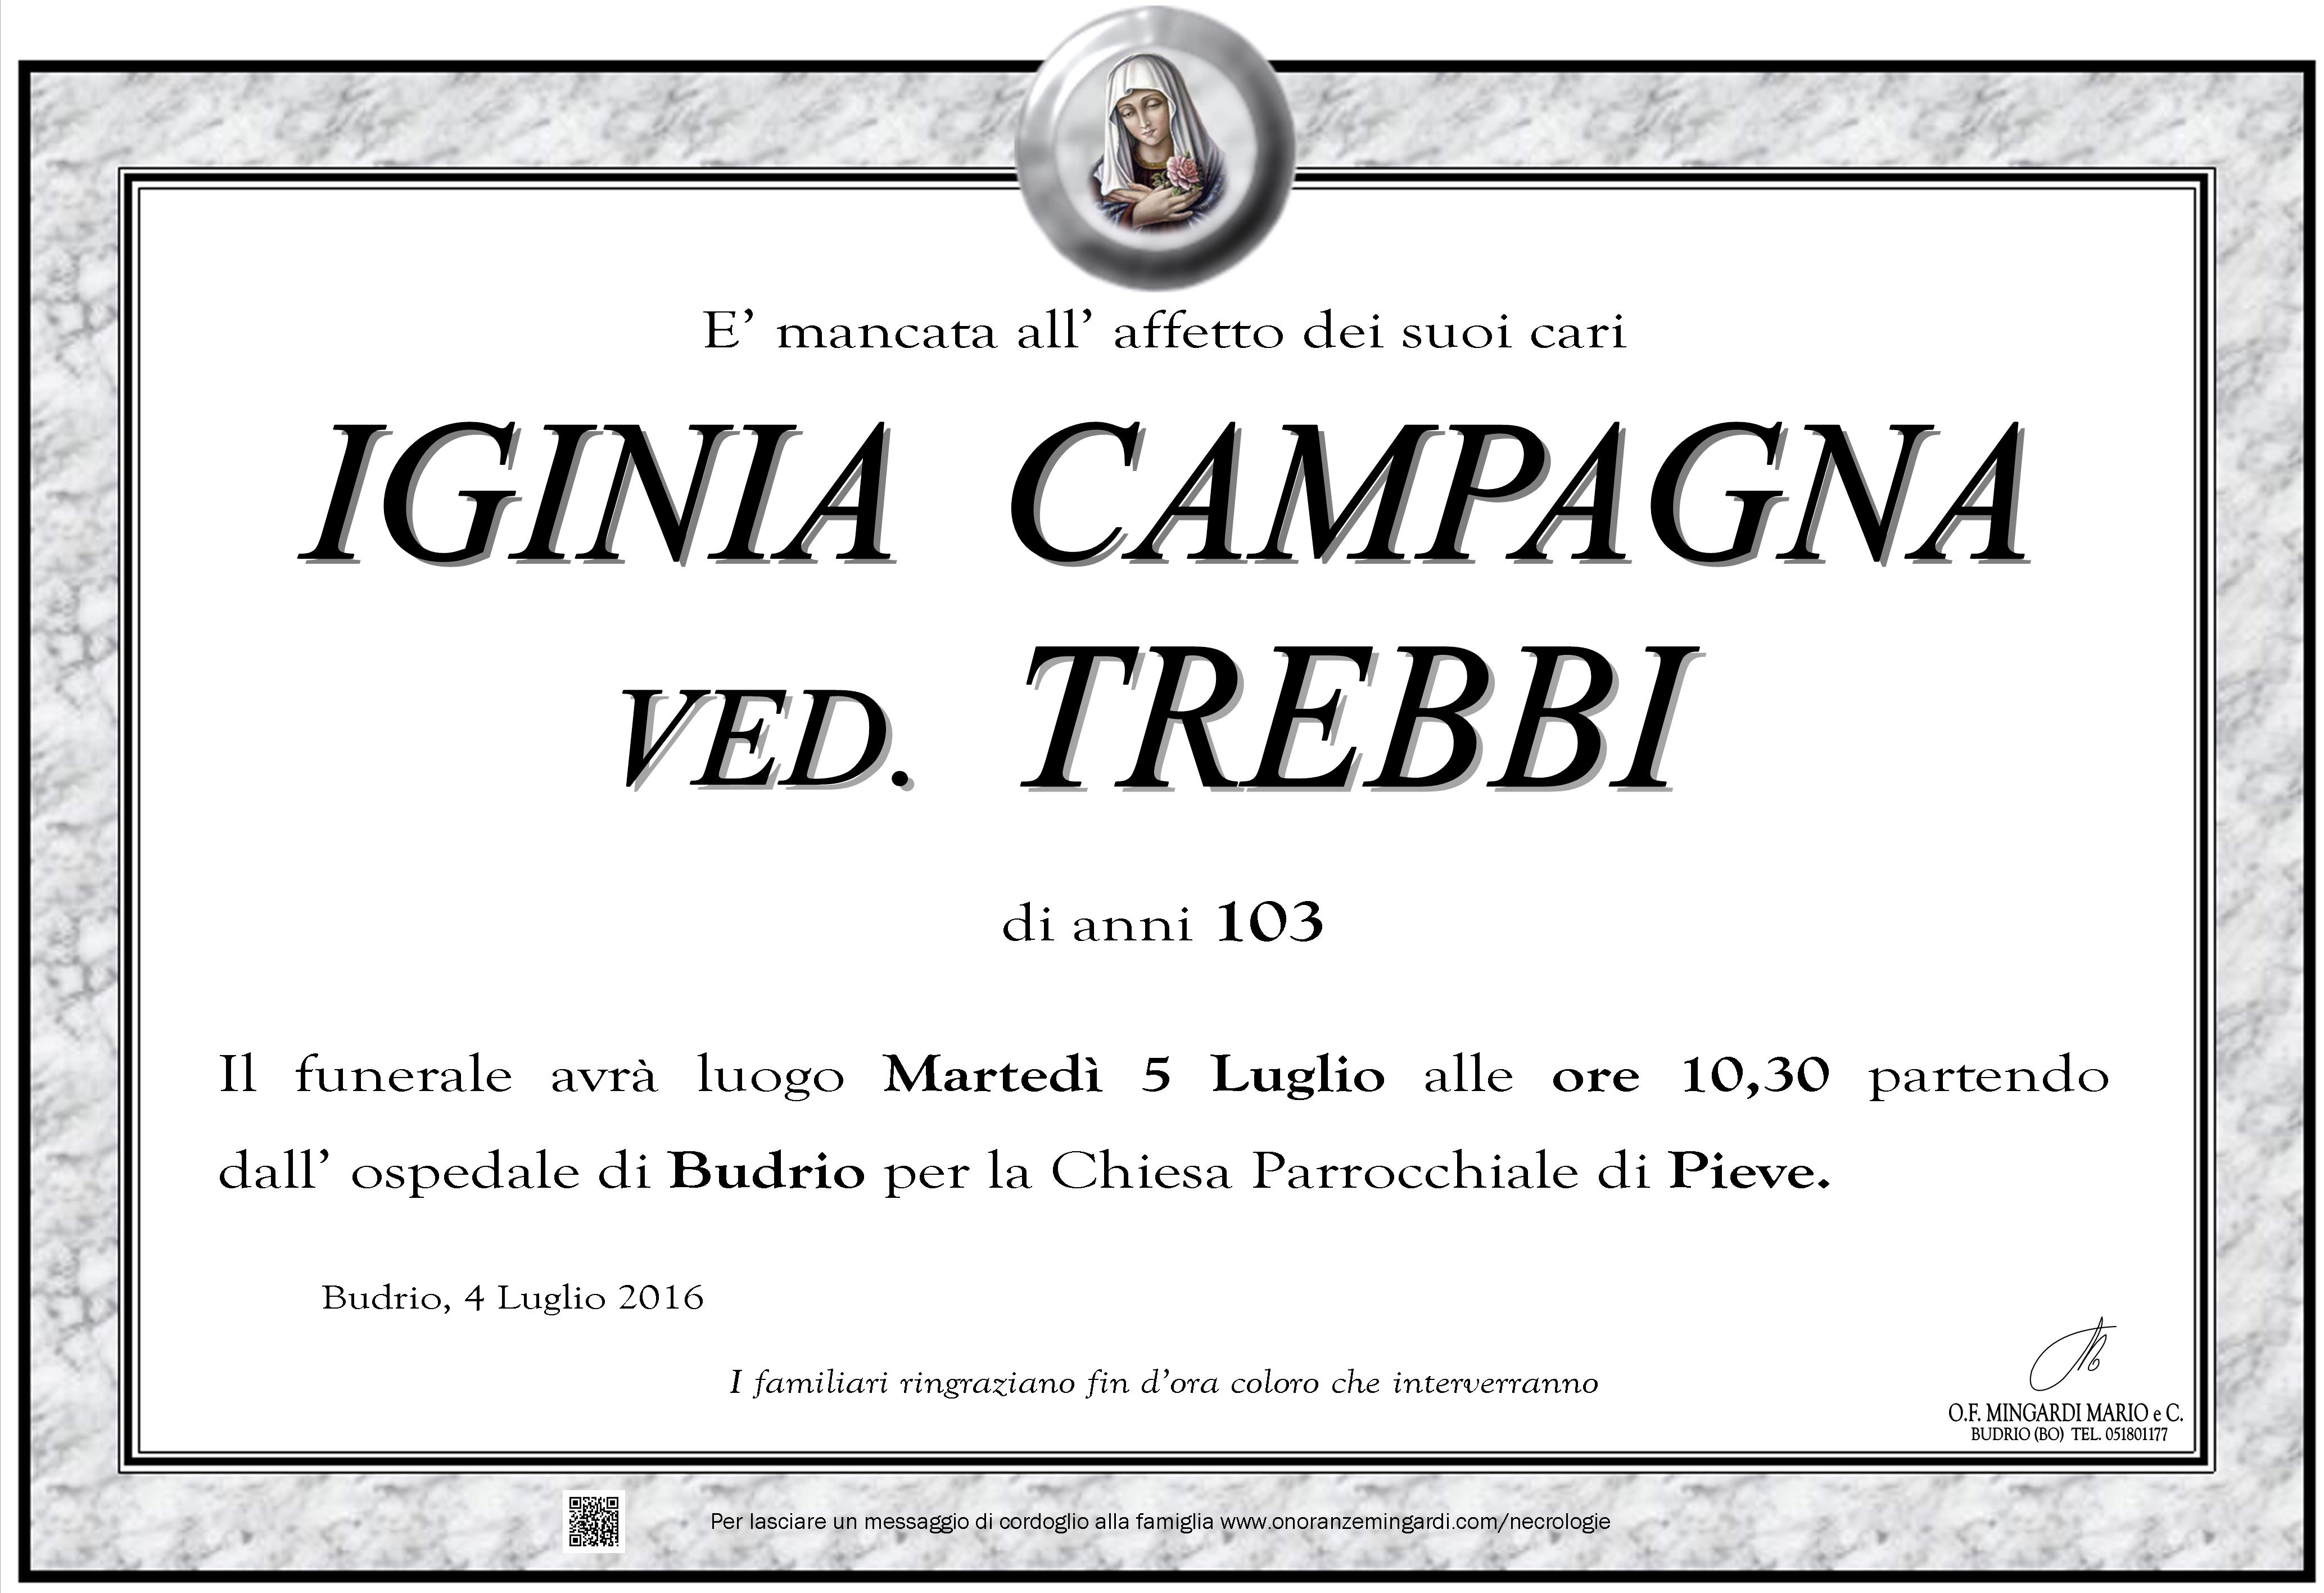 Iginia Campagna Manifesto